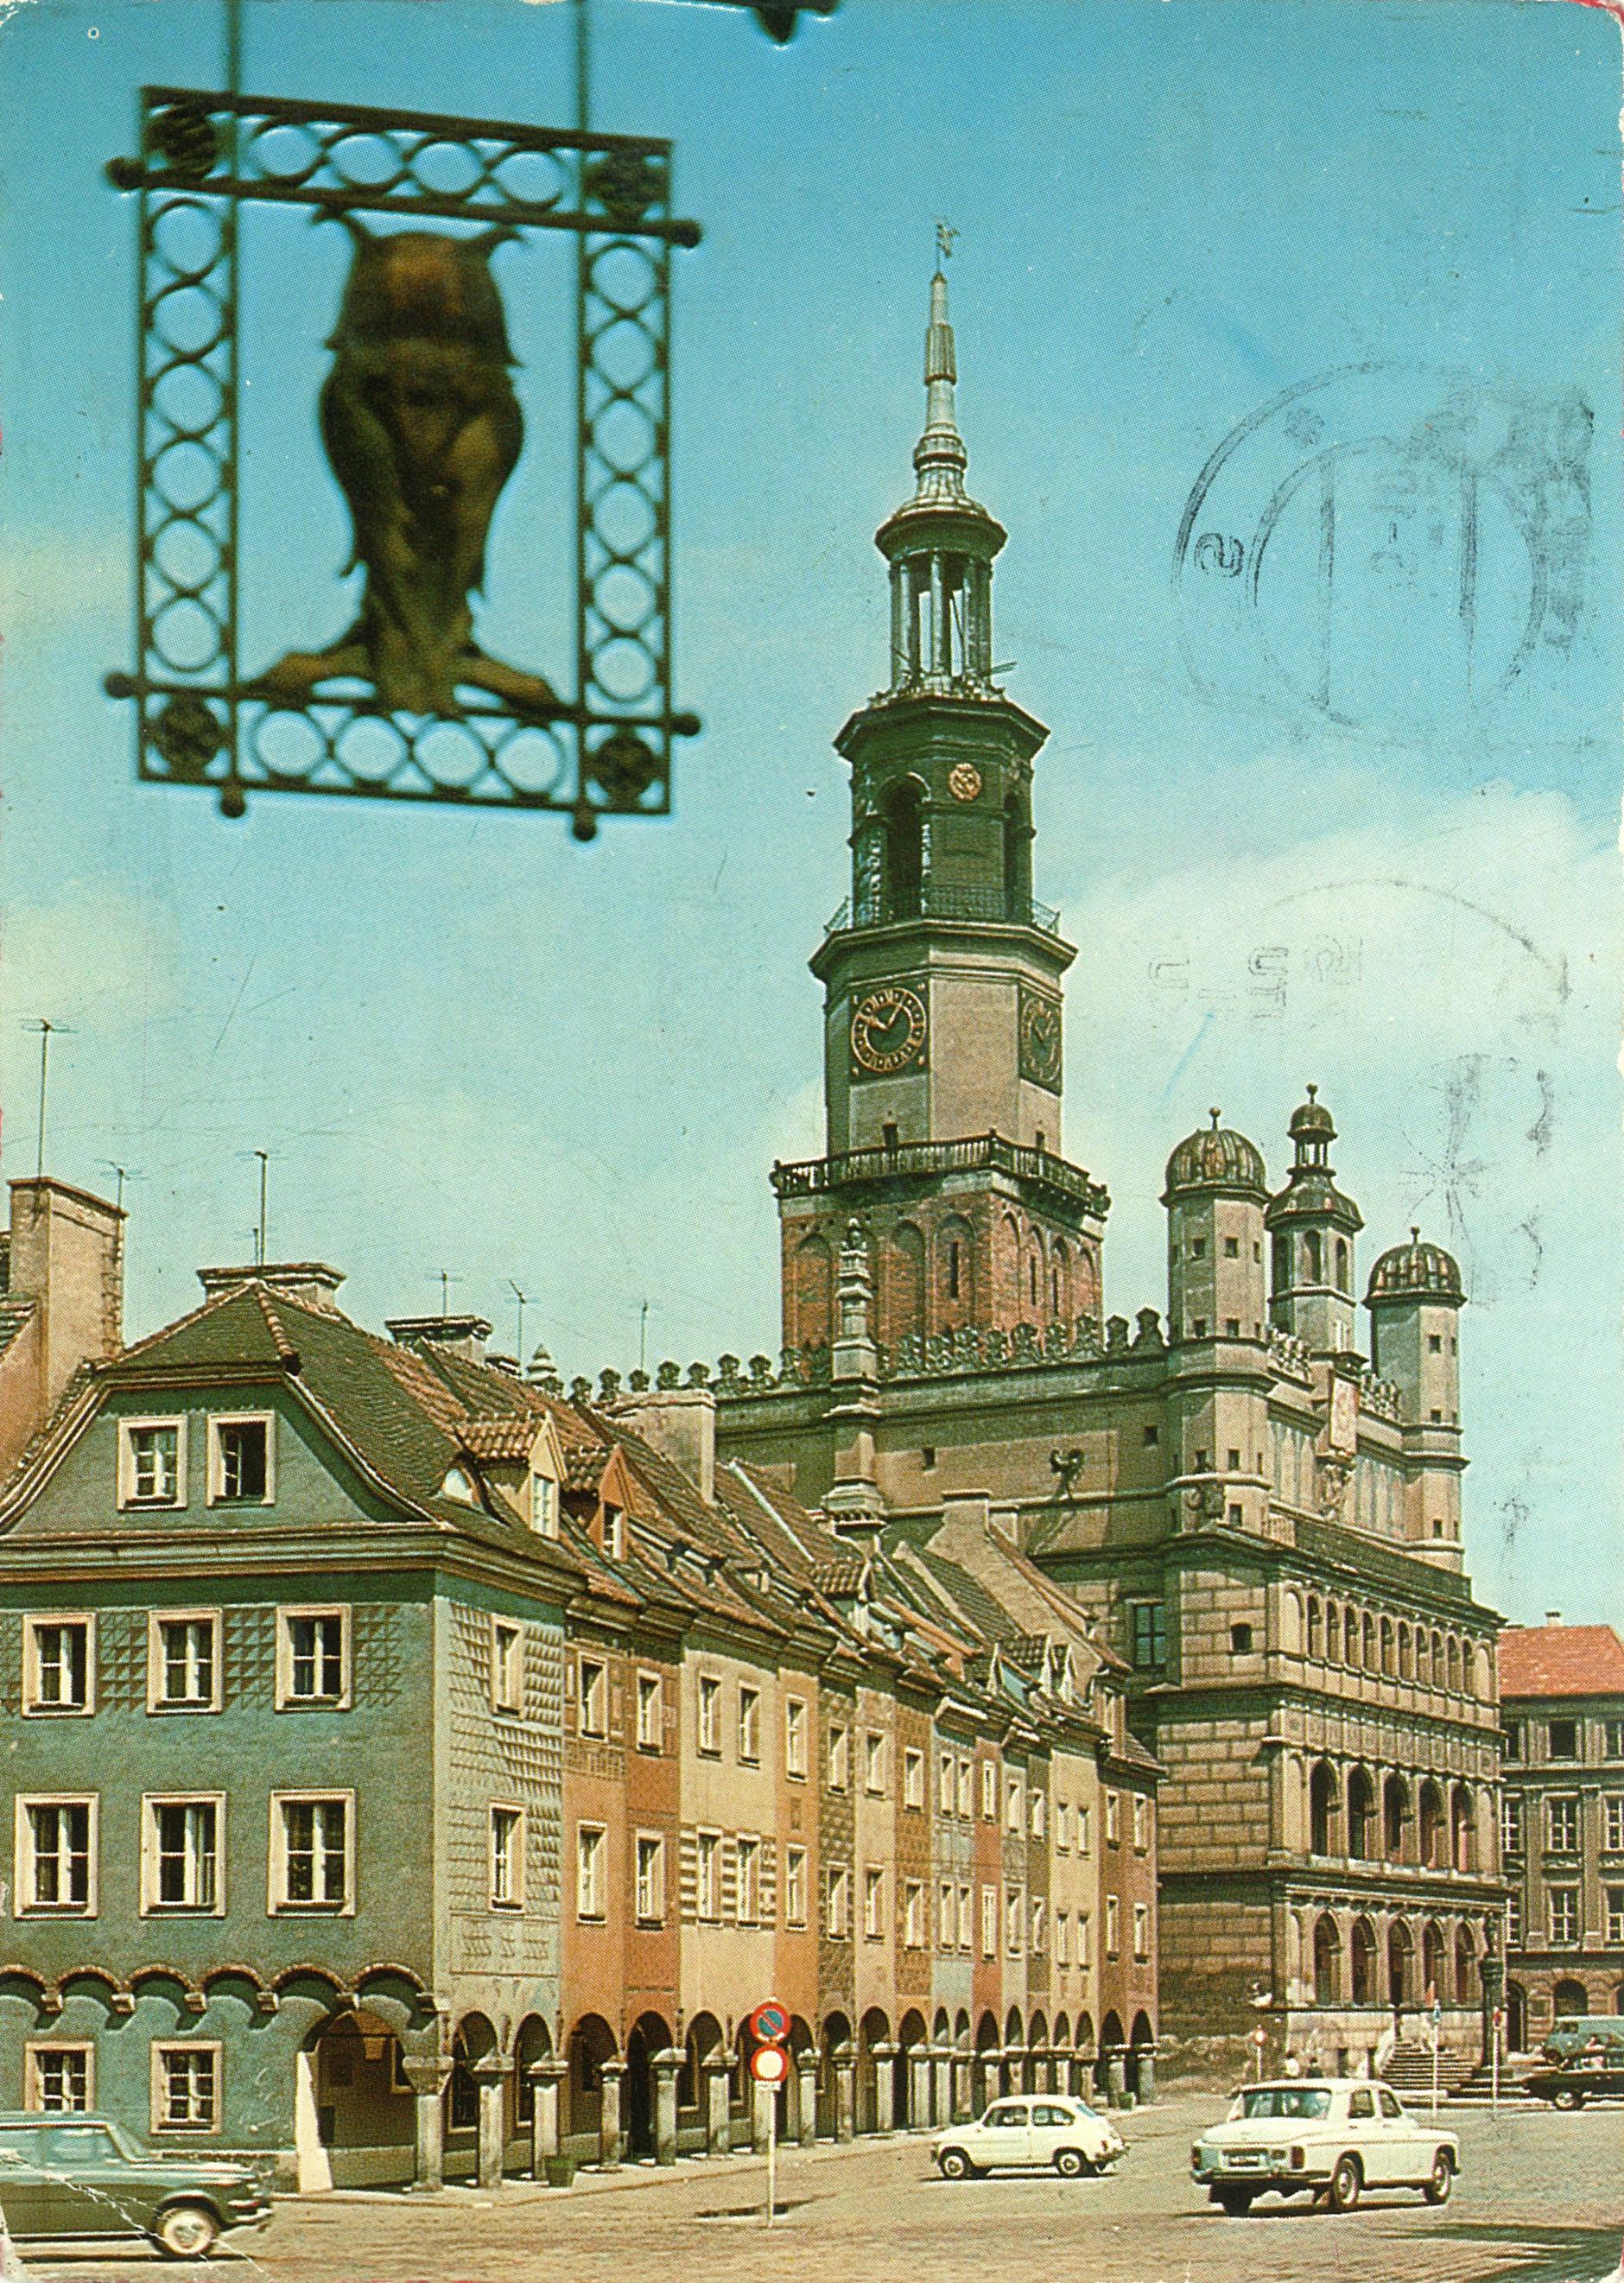 (1975) Renesansowy Ratusz i domki budnicze na Starym Rynku.